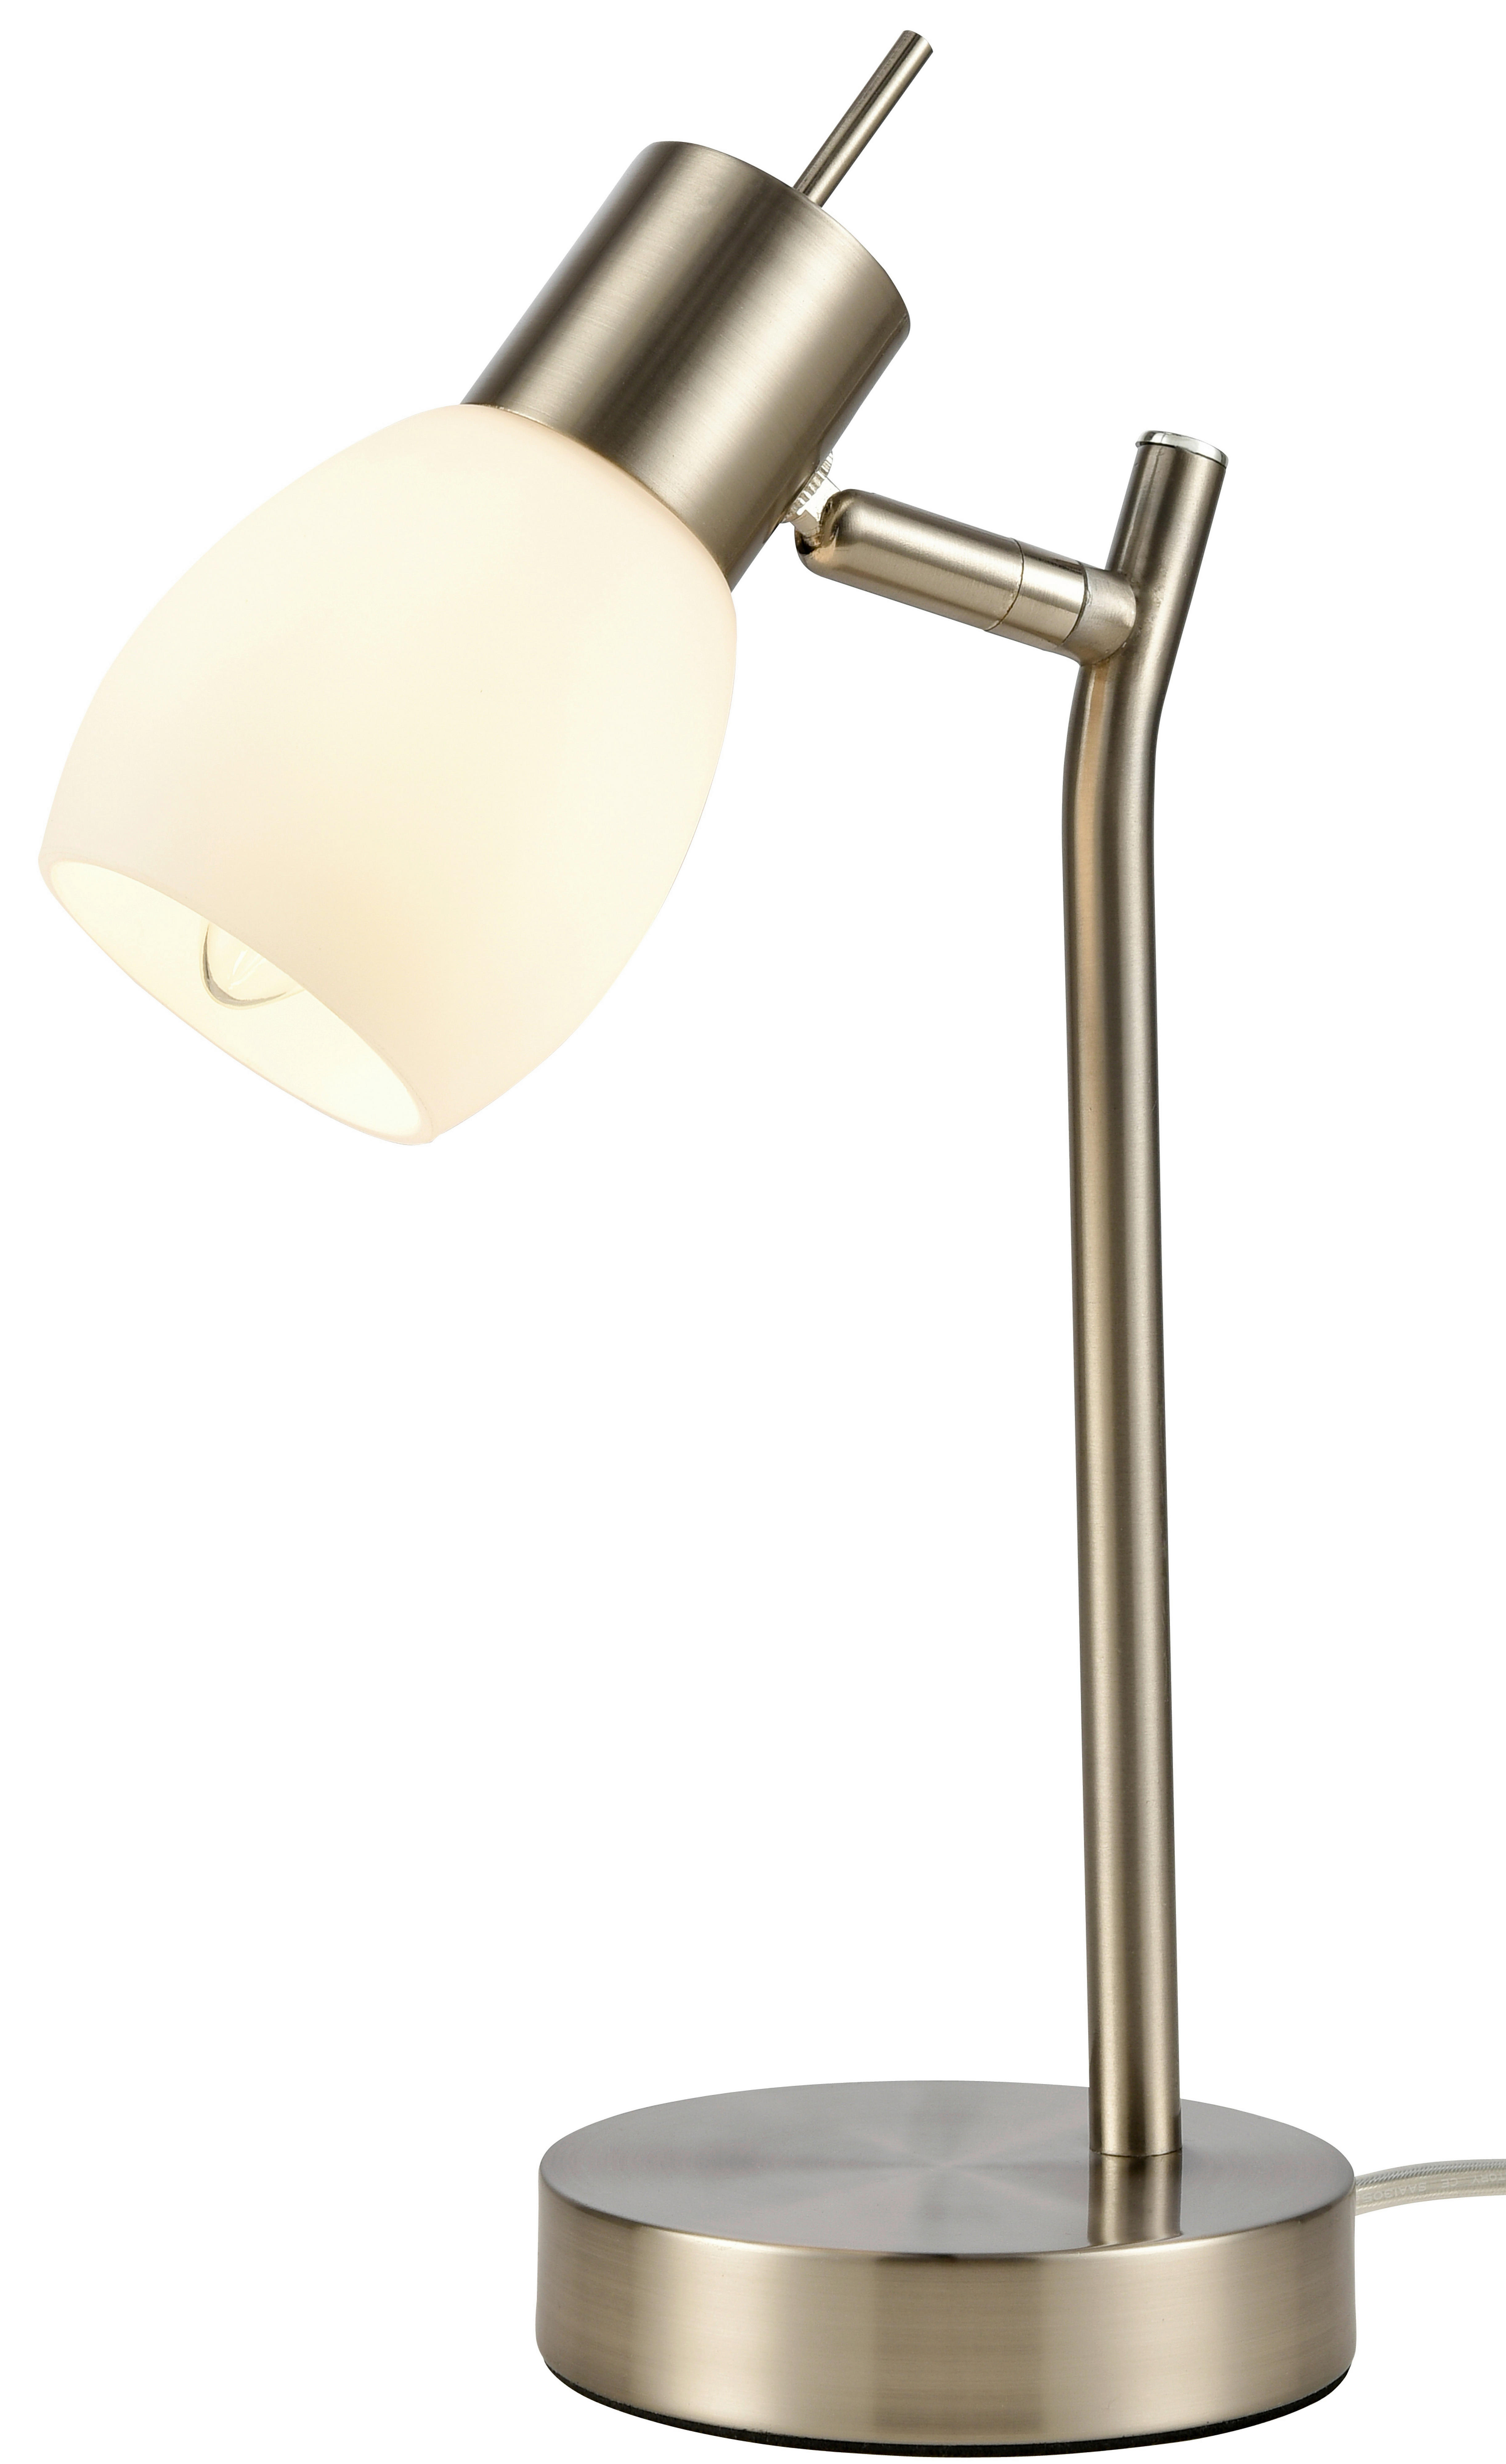 STOLOVÁ LAMPA, E14, 34,5 cm - biela/niklová, Konventionell, kov/sklo (34,5cm) - Xora